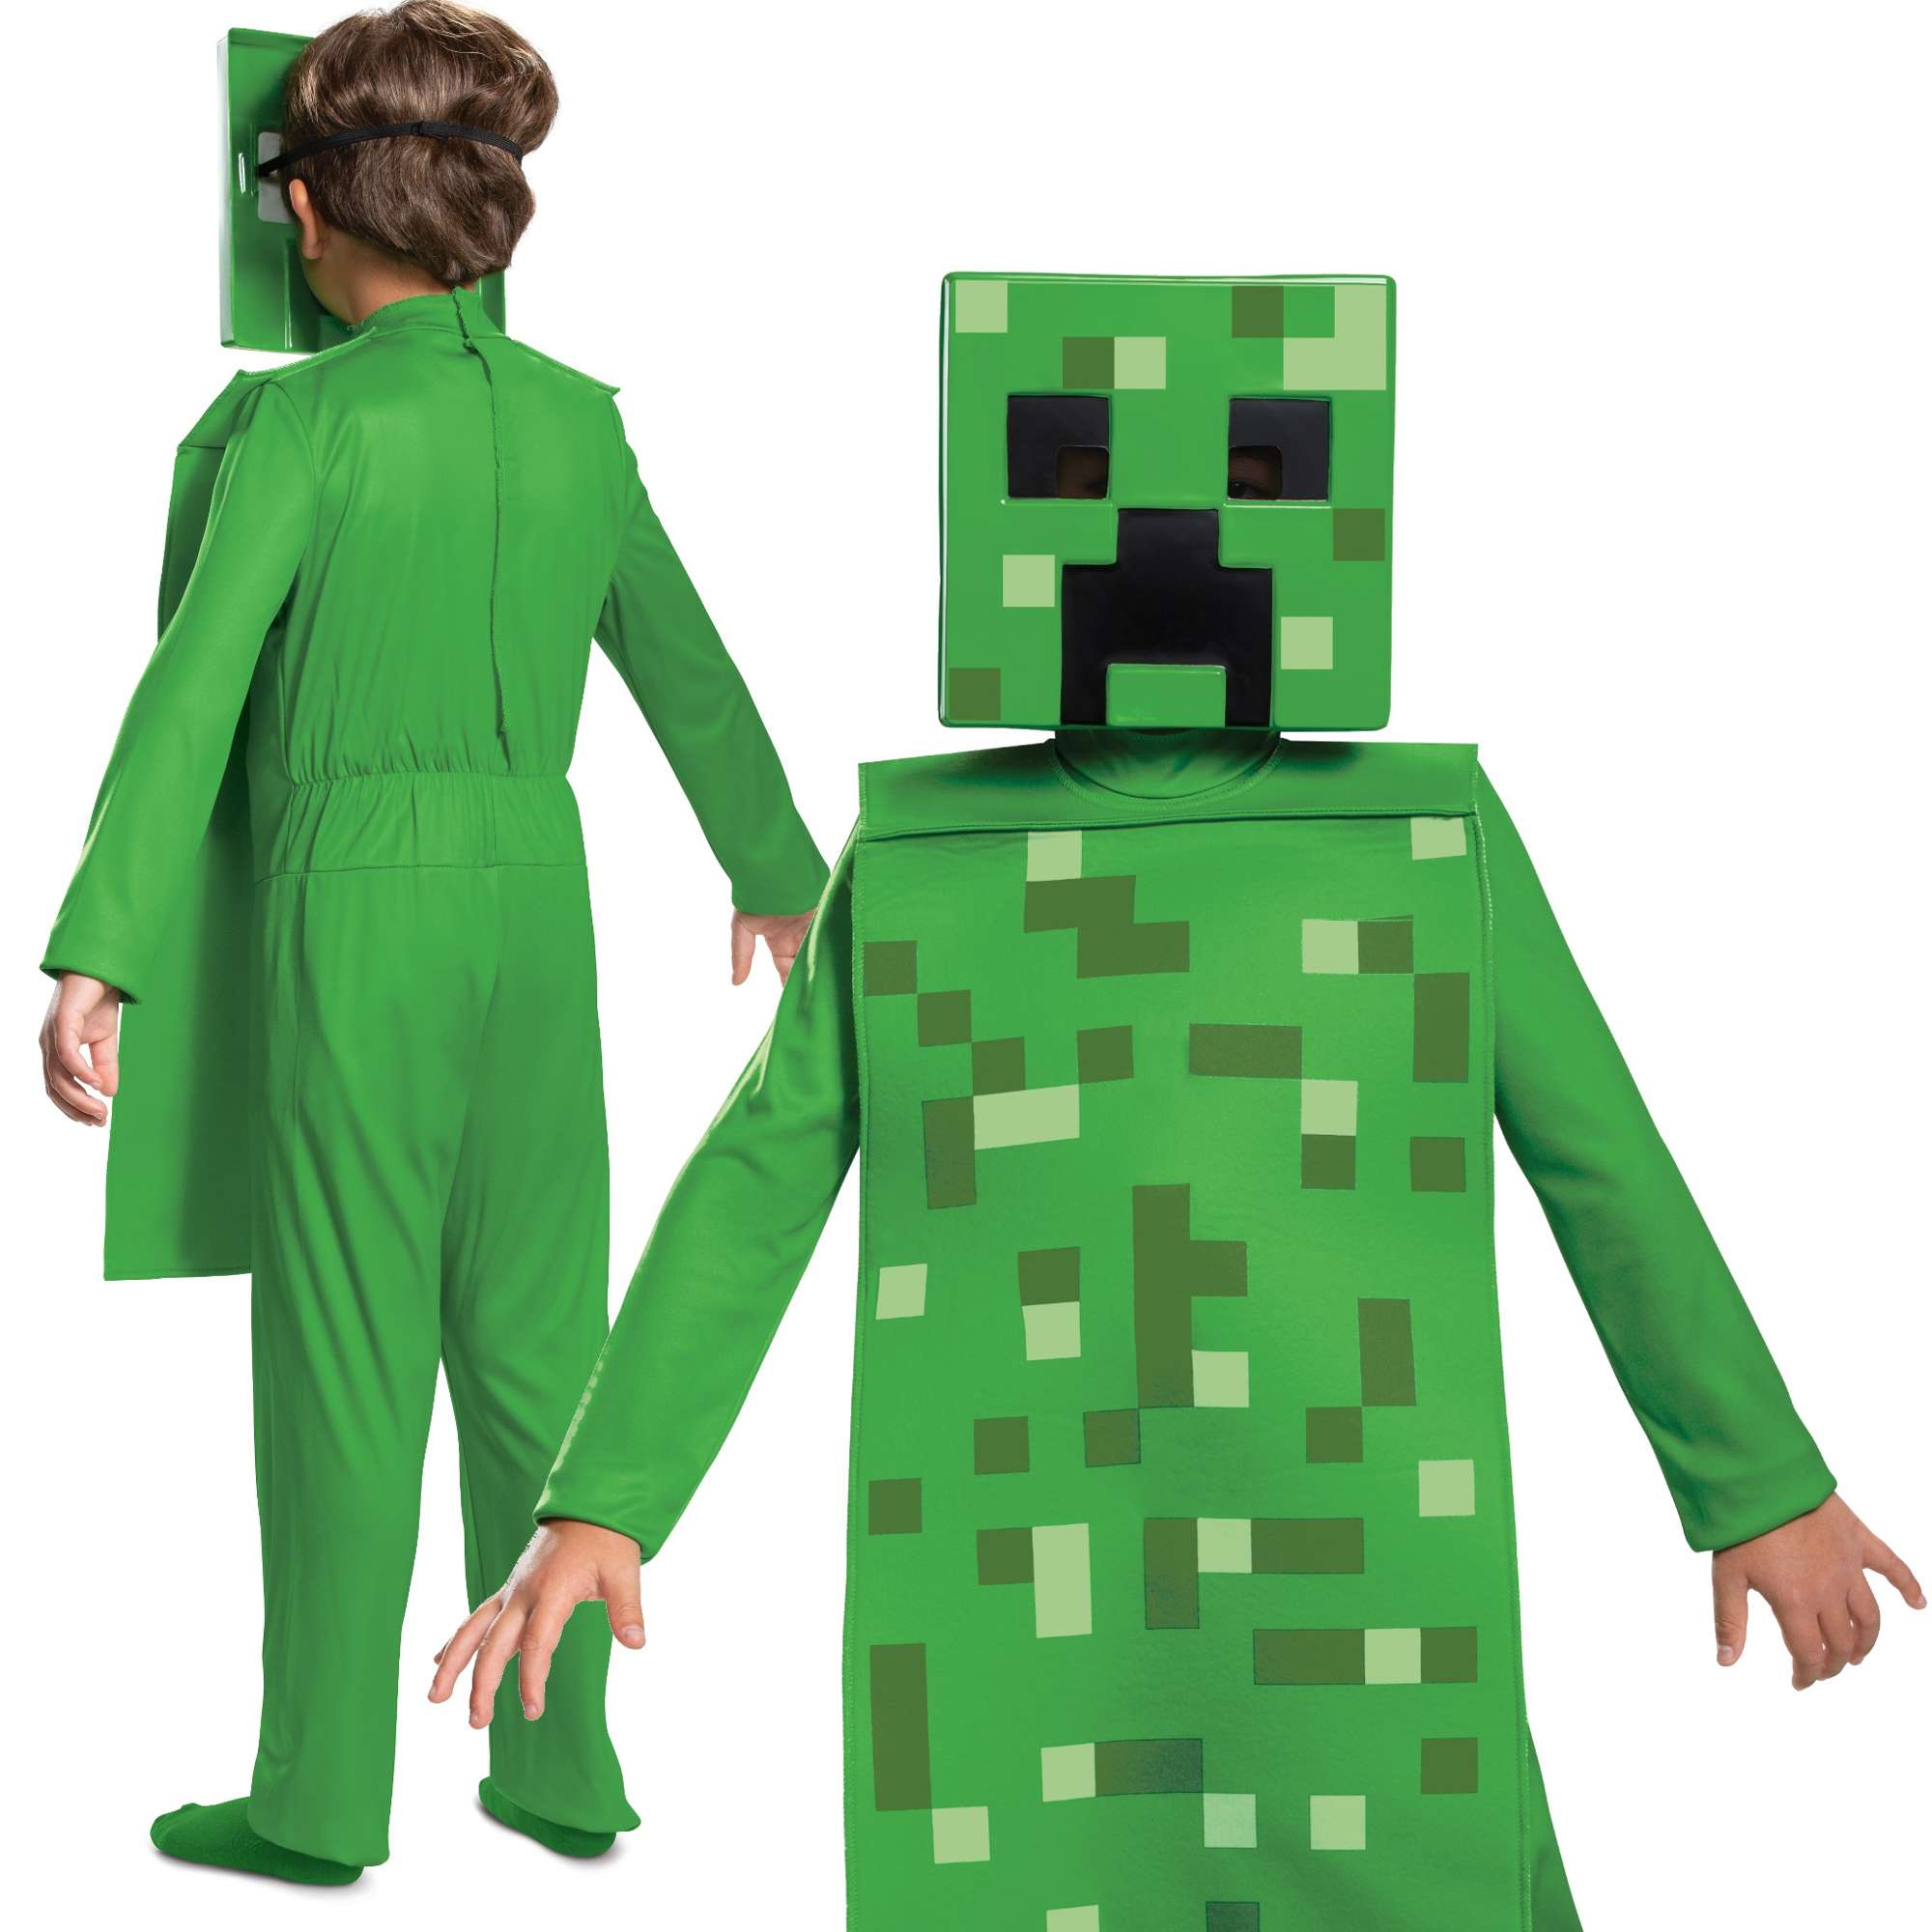 Minecraft strj karnawaowy dla chopca Creeper kostium przebranie 134-146 cm (10-12 lat)